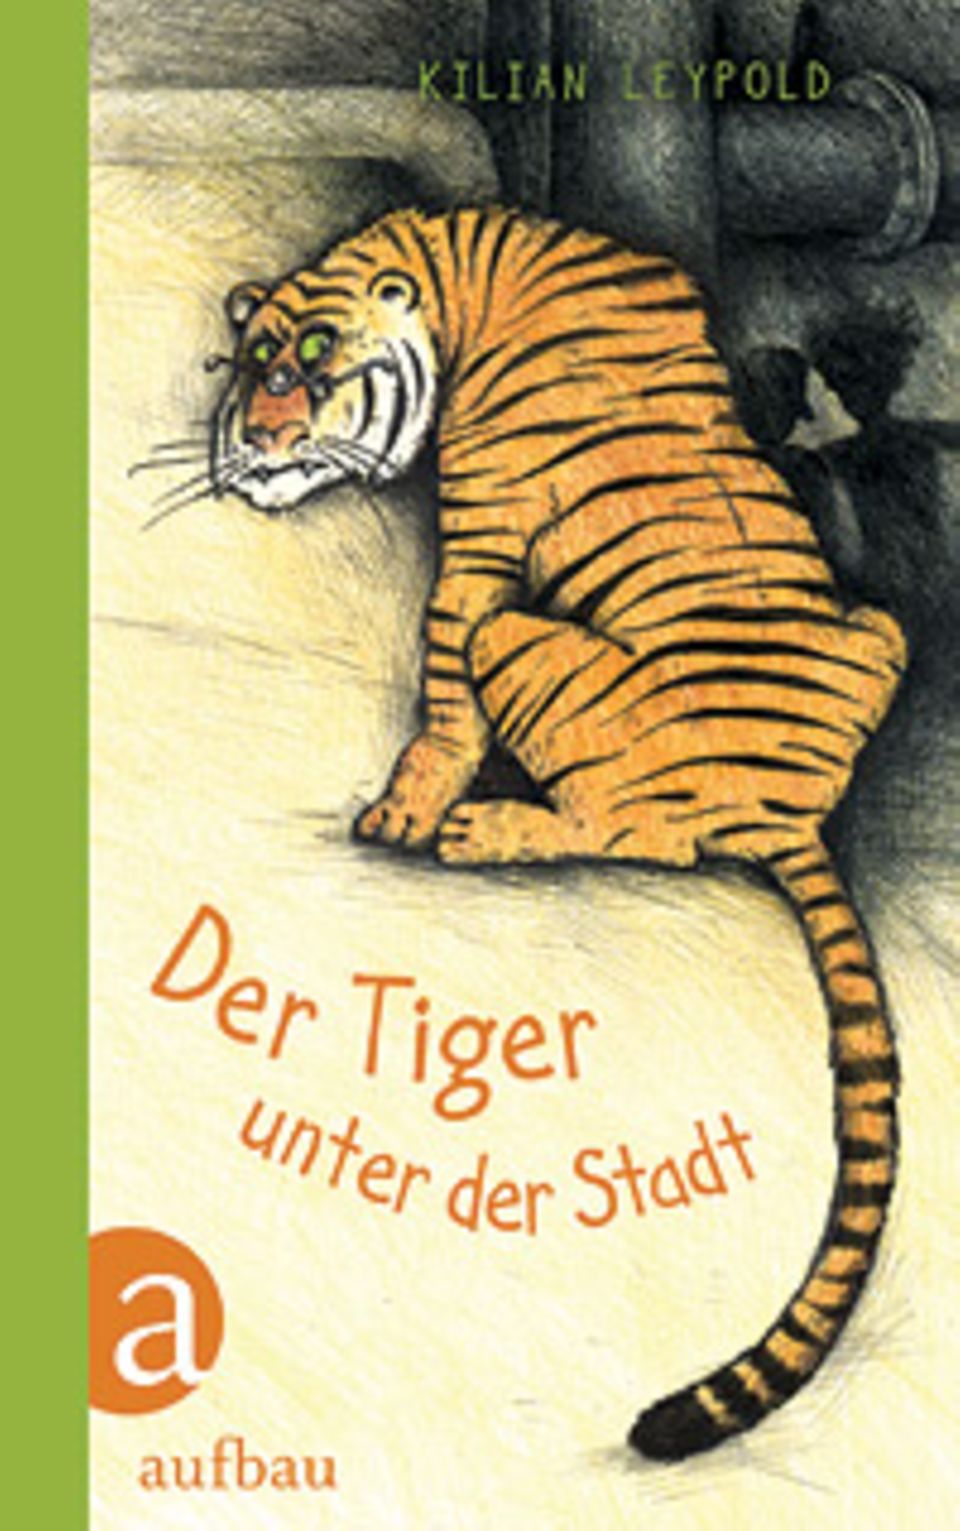 Roman: „Der Tiger unter der Stadt“ von Kilian Leypold